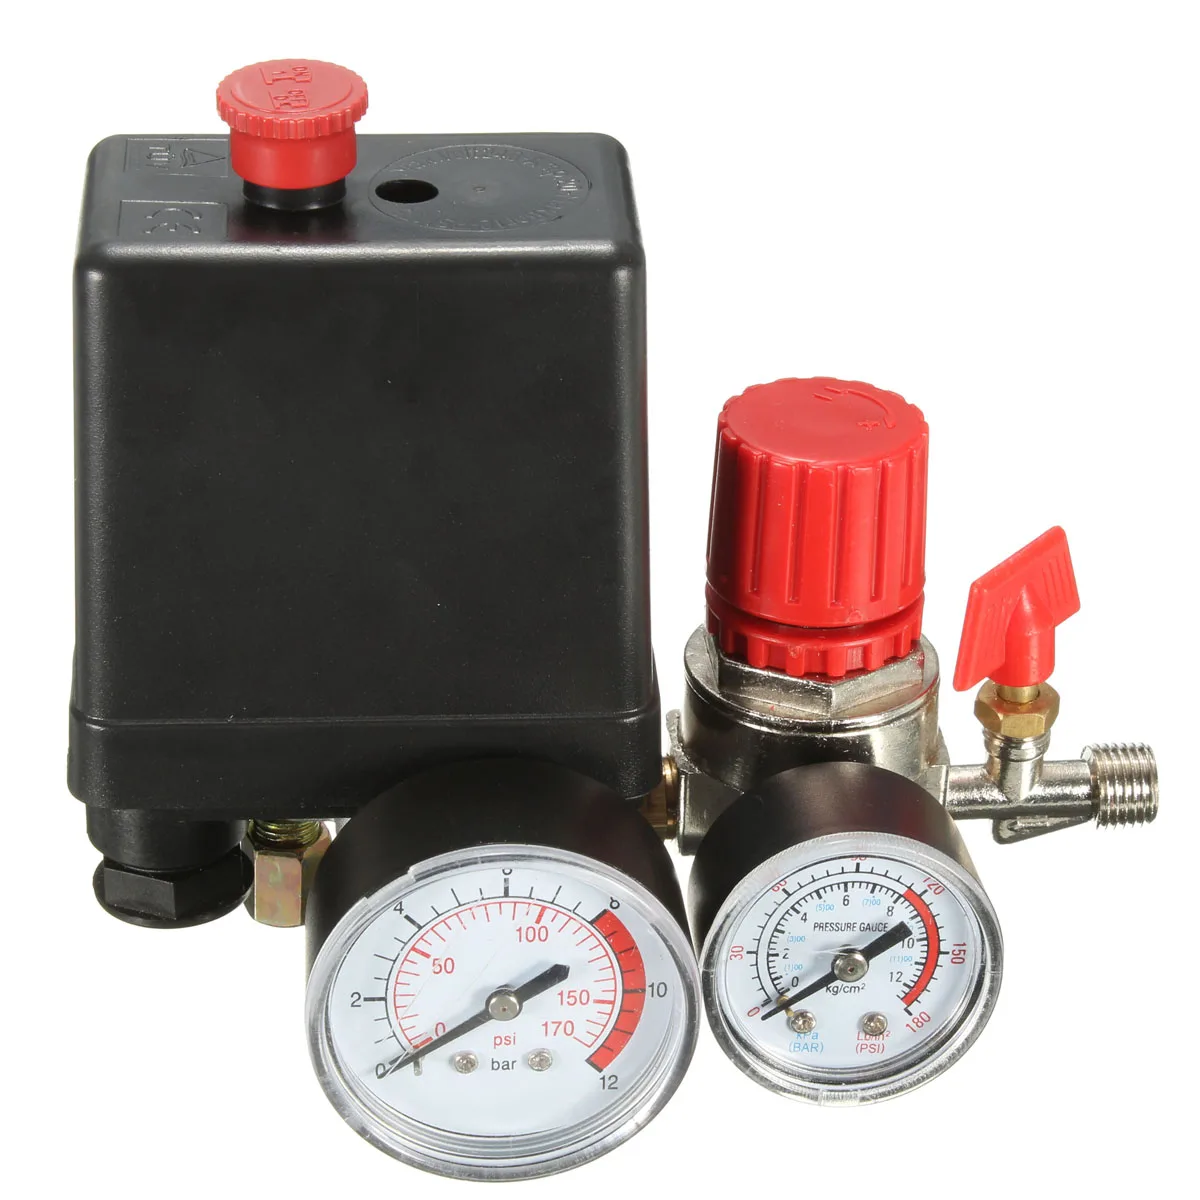 Переключатель давления клапан коллектор регулятор манометры для воздушного компрессора 7,25-174 PSI Регулируемый переключатель давления для воздушного компрессора